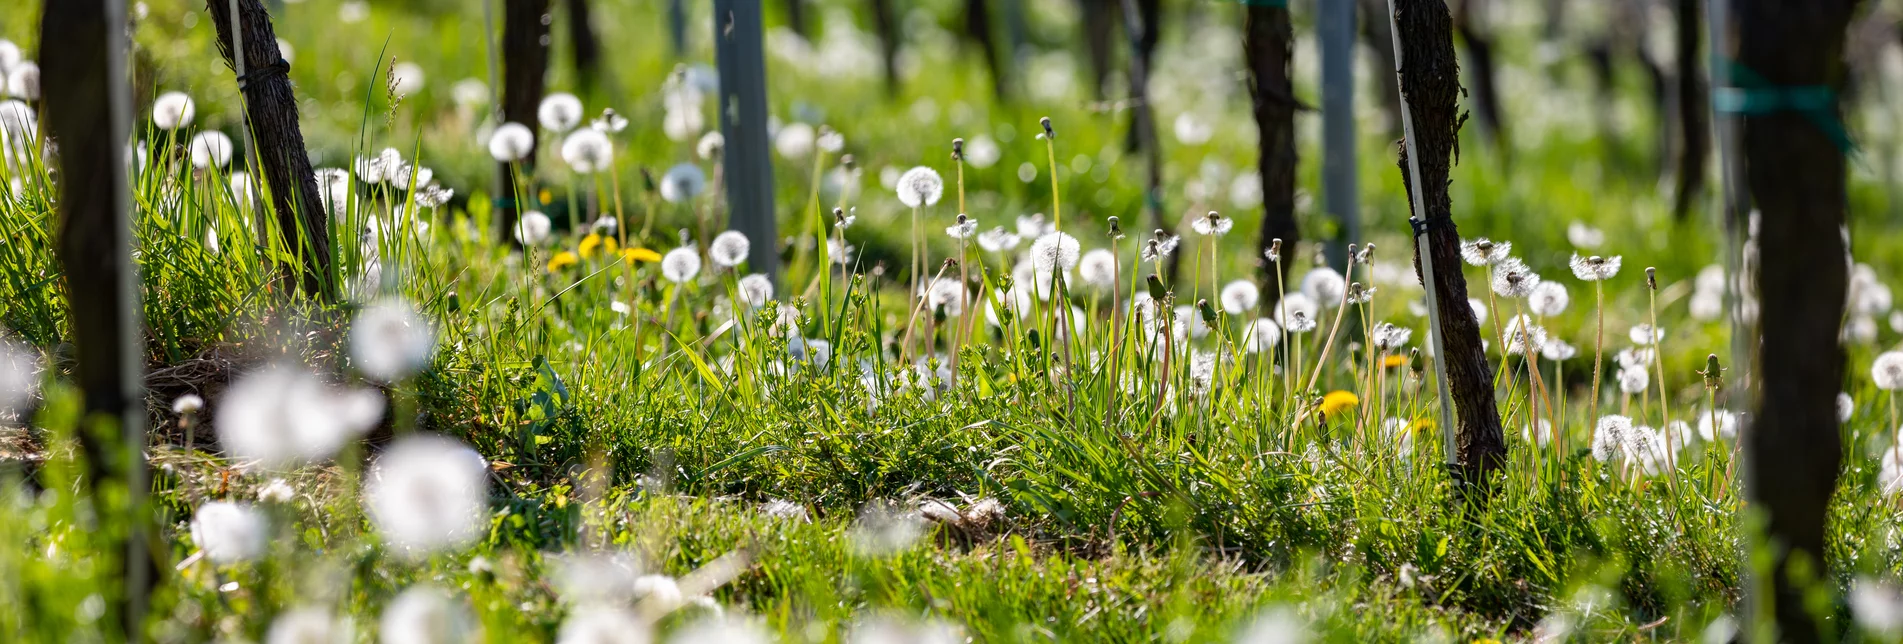 Frühling im Weingarten | © Tourismusverband Südsteiermark | Harry Schiffer